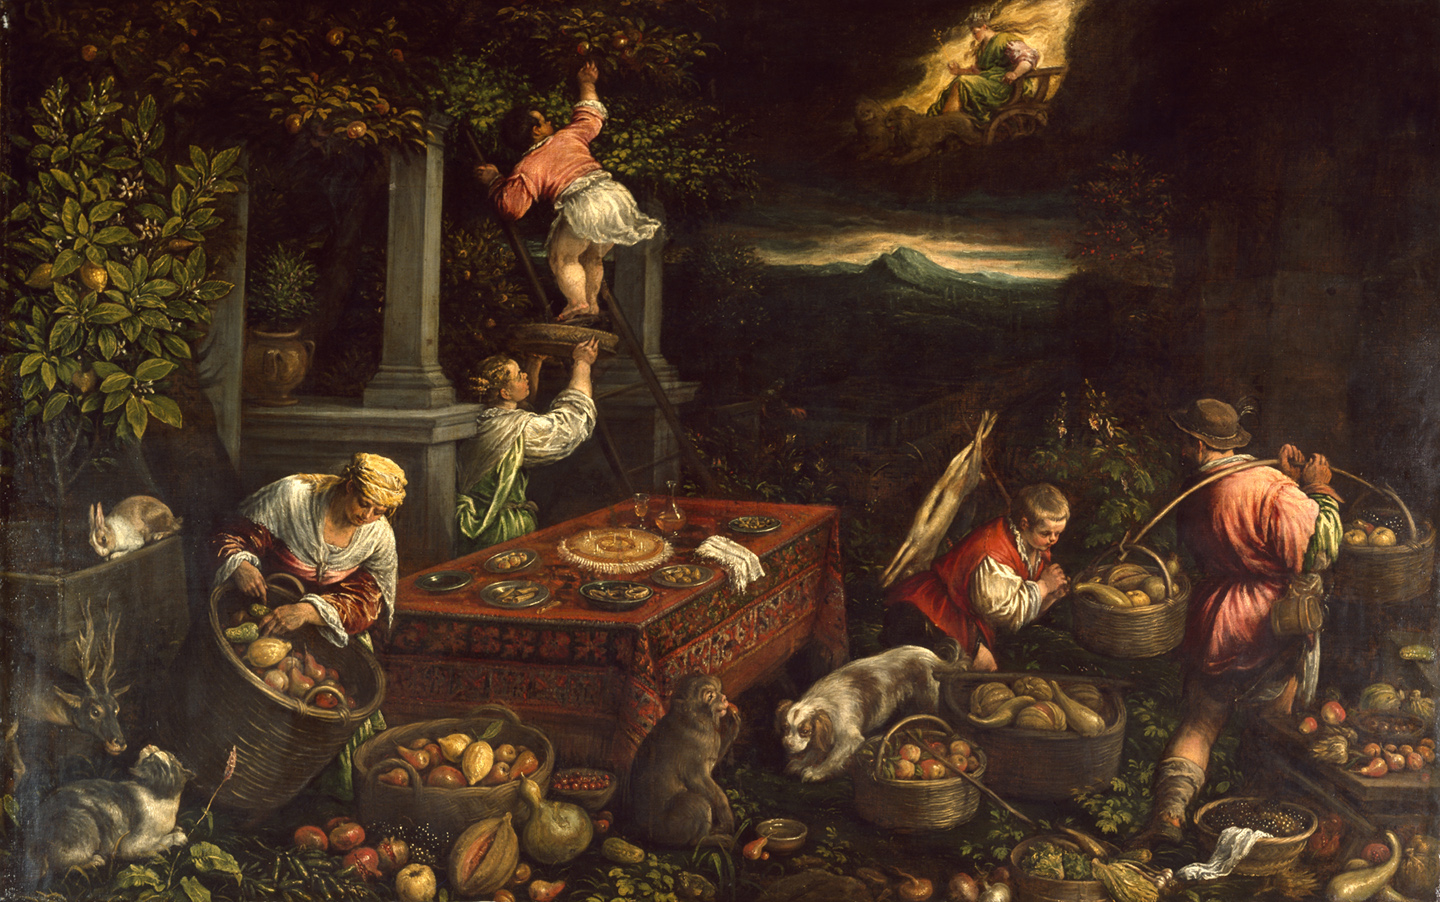 Tác phẩm “Allegory of the Element Earth” (Câu chuyện ngụ ngôn về nguyên tố Đất) của họa sĩ Leandro Bassano, khoảng năm 1580. Sơn dầu trên vải canvas. Bảo tàng Nghệ thuật Walters, Baltimore. (Ảnh: Tài liệu công cộng)